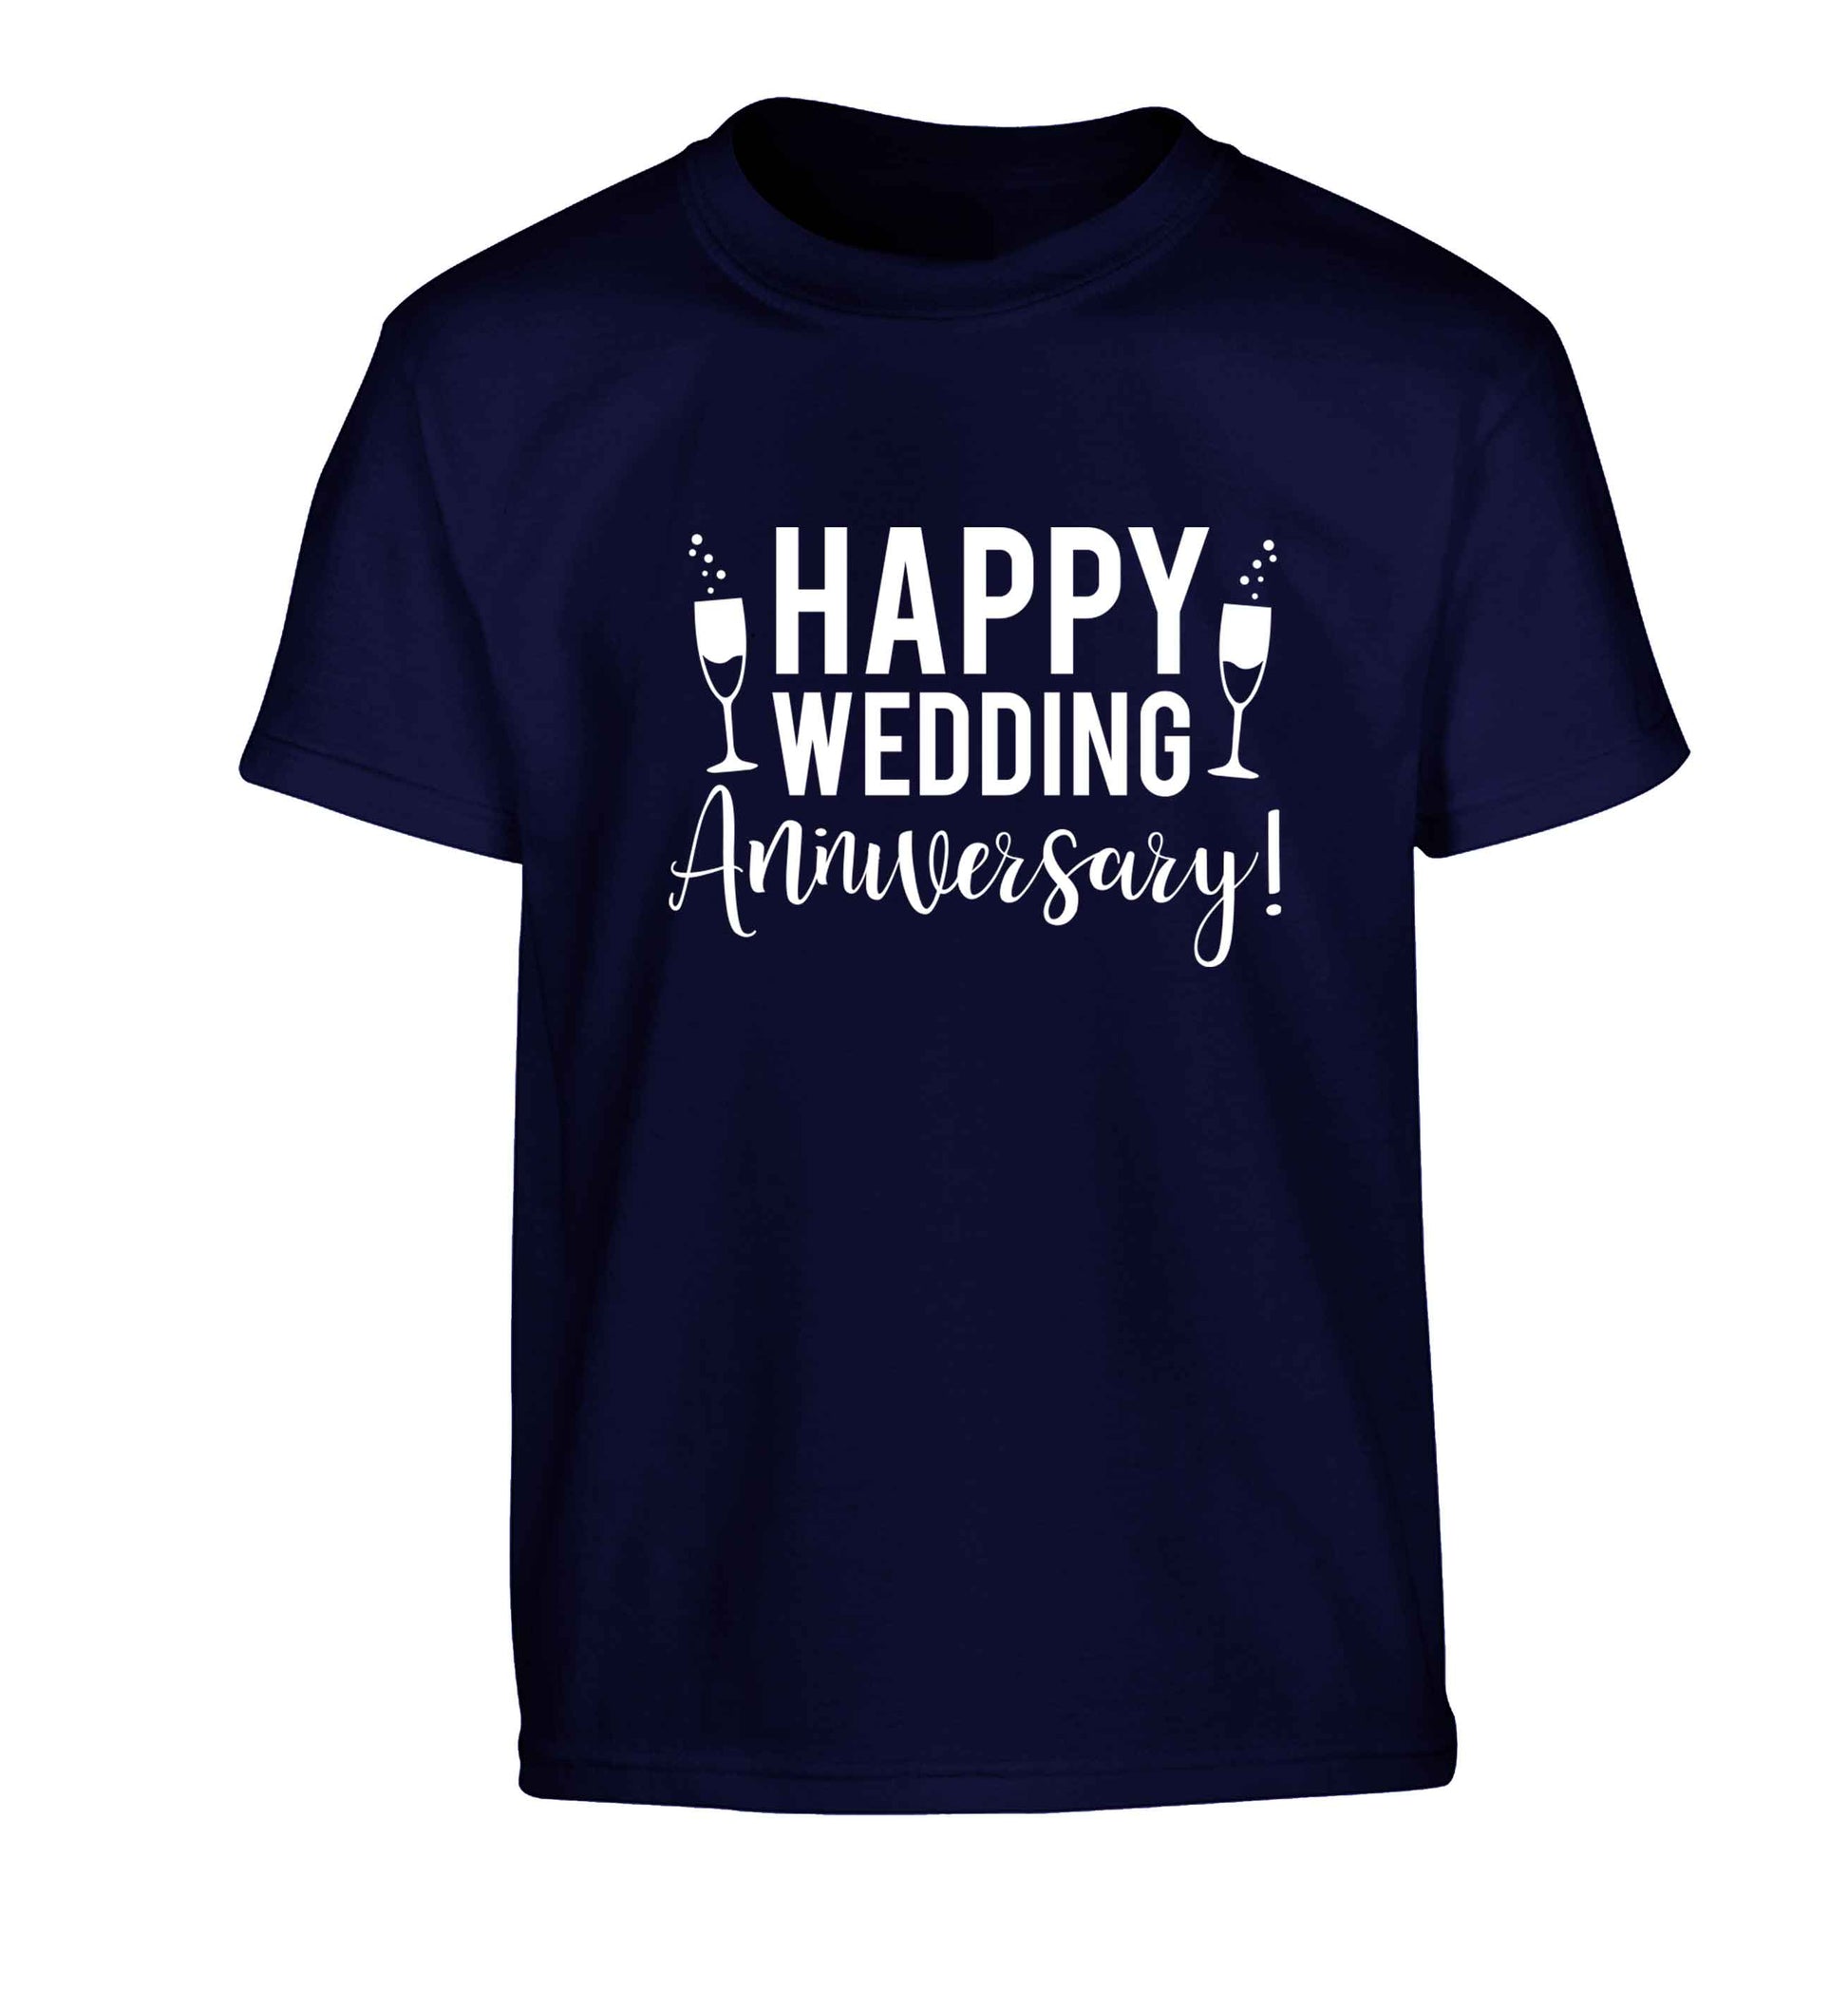 Happy wedding anniversary! Children's navy Tshirt 12-13 Years